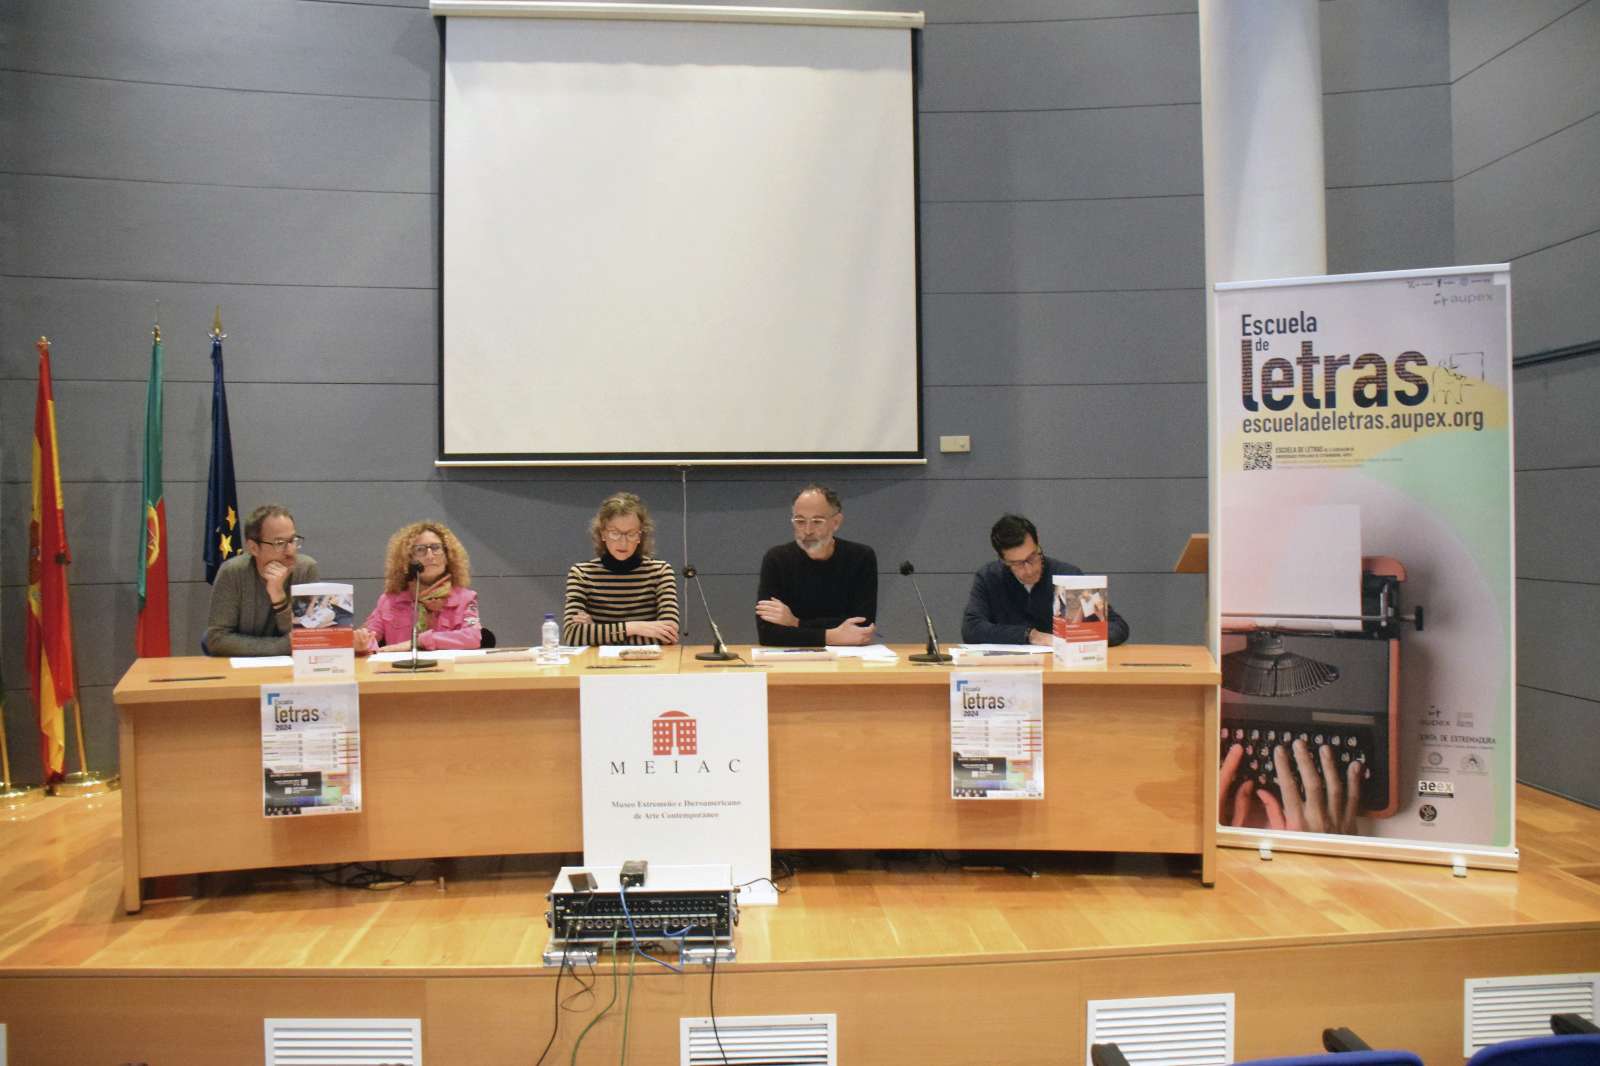 La Junta de Extremadura reafirma su compromiso con la Escuela de Letras. Foto: Junta de Extremadura